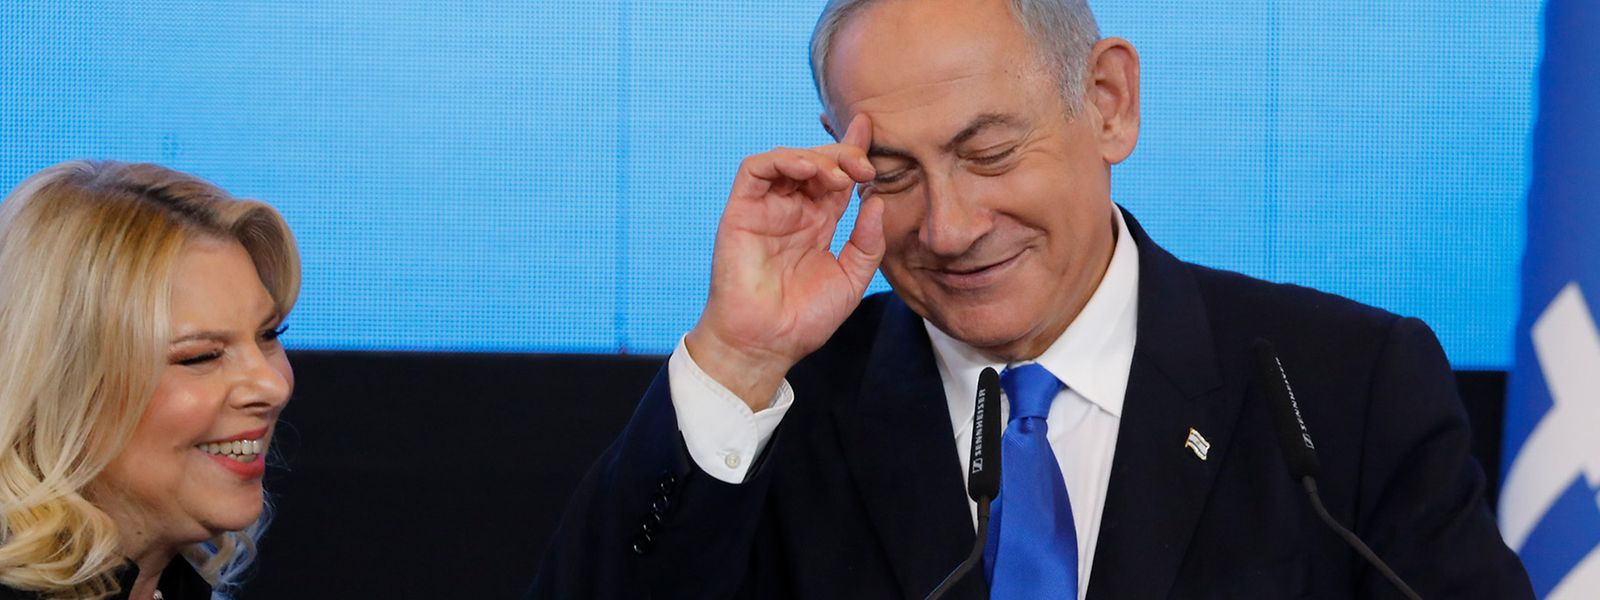 Nach gut einem Jahr Opposition gelingt Benjamin Netanjahu ein Comeback. Ein rechtsextremes Bündnis verhilft ihm zum Sieg.